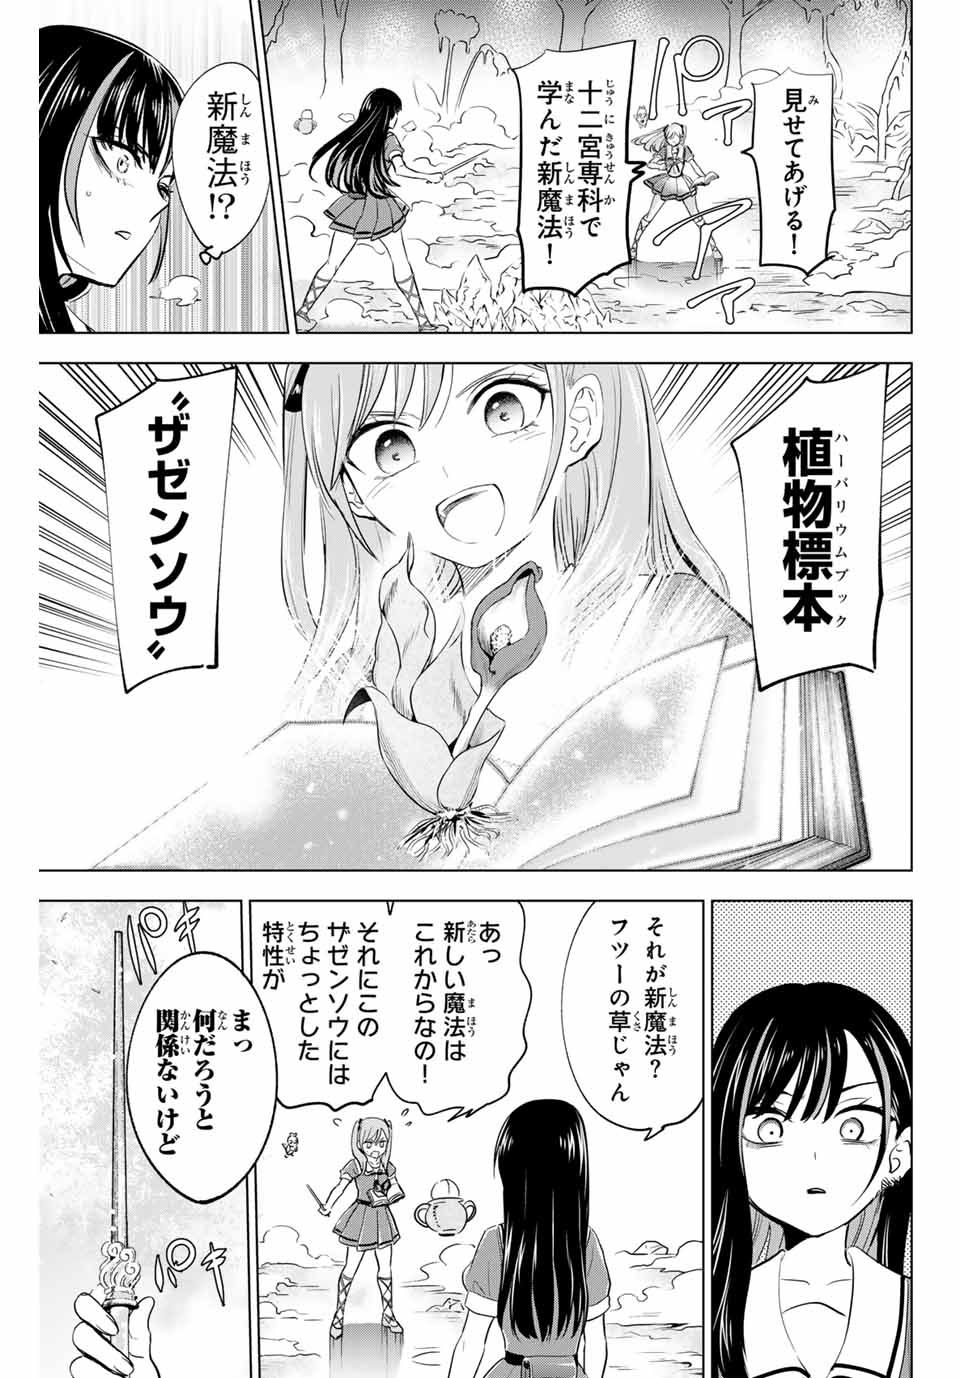 Kuroneko to Majo no Kyoushitsu - Chapter 55 - Page 3